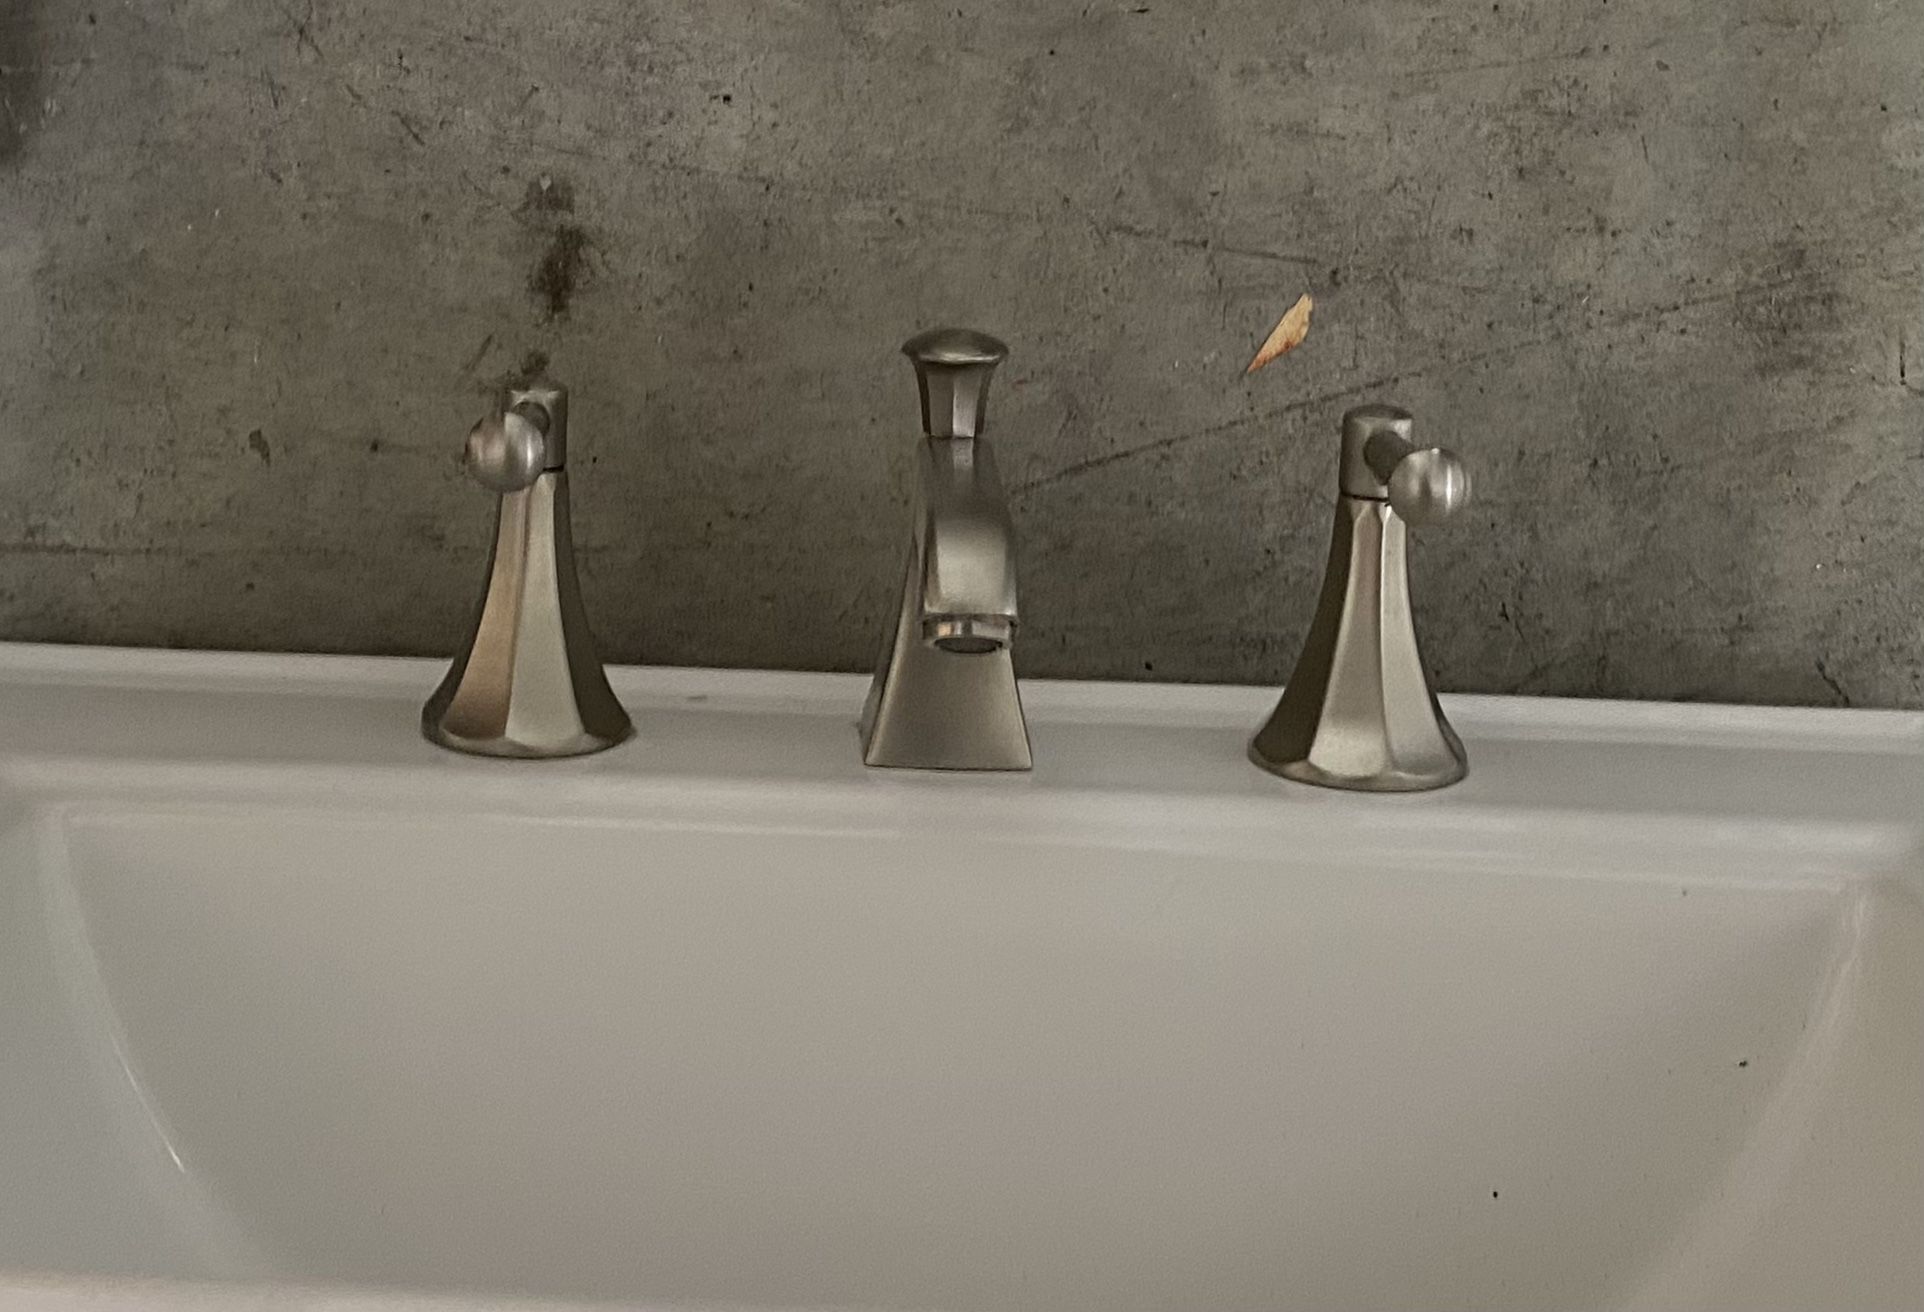 (2) Kohler Vanity Faucets